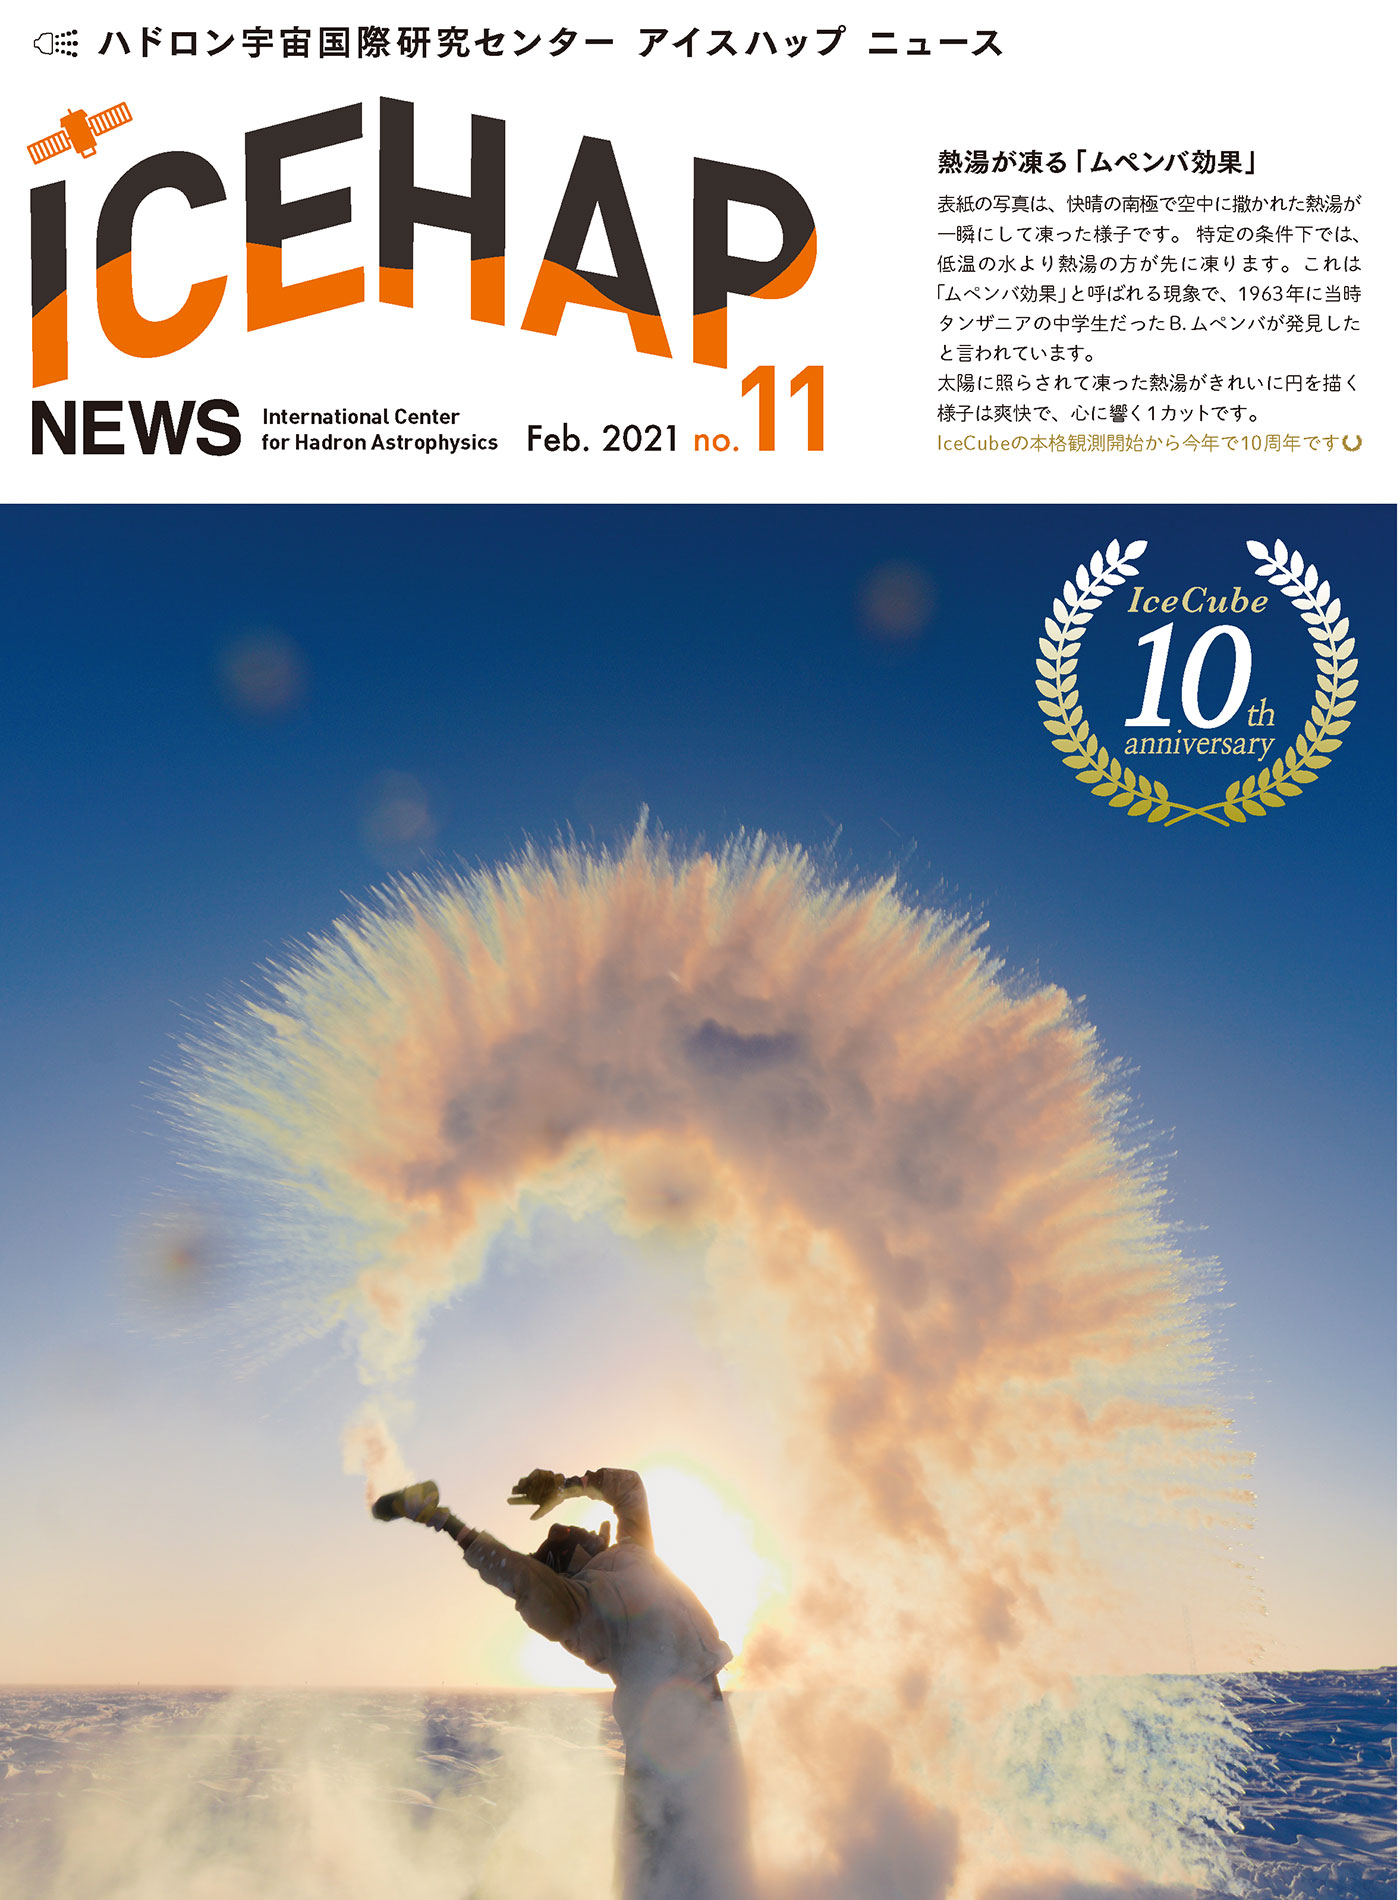 ICEHAP News11号